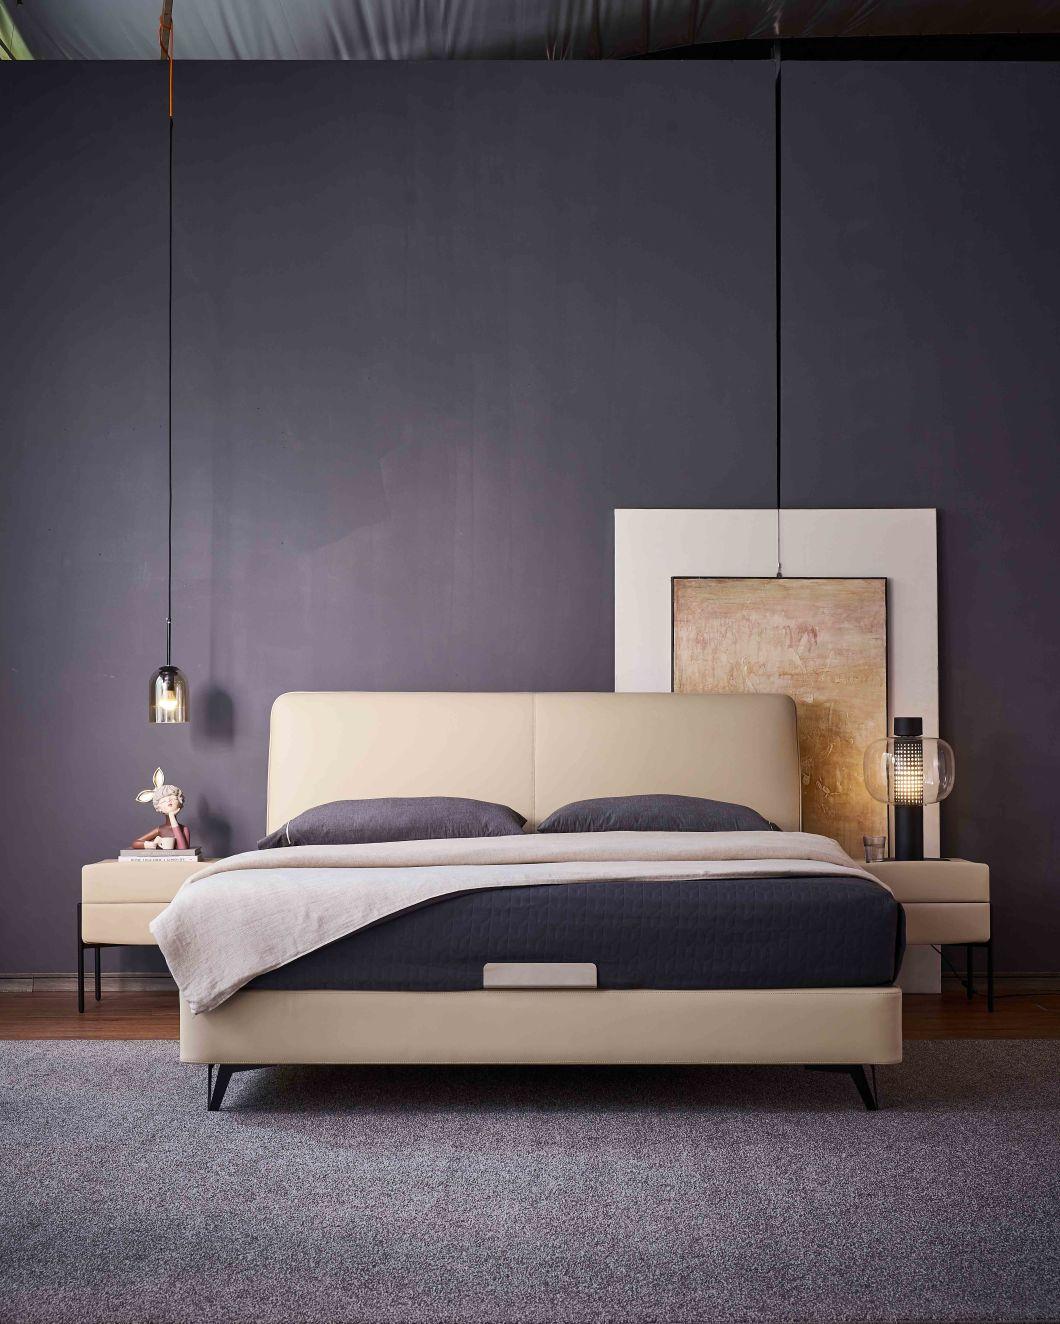 Modern Bedroom Furniture Beds Modern Bed King Bed for Villa a-Mf002